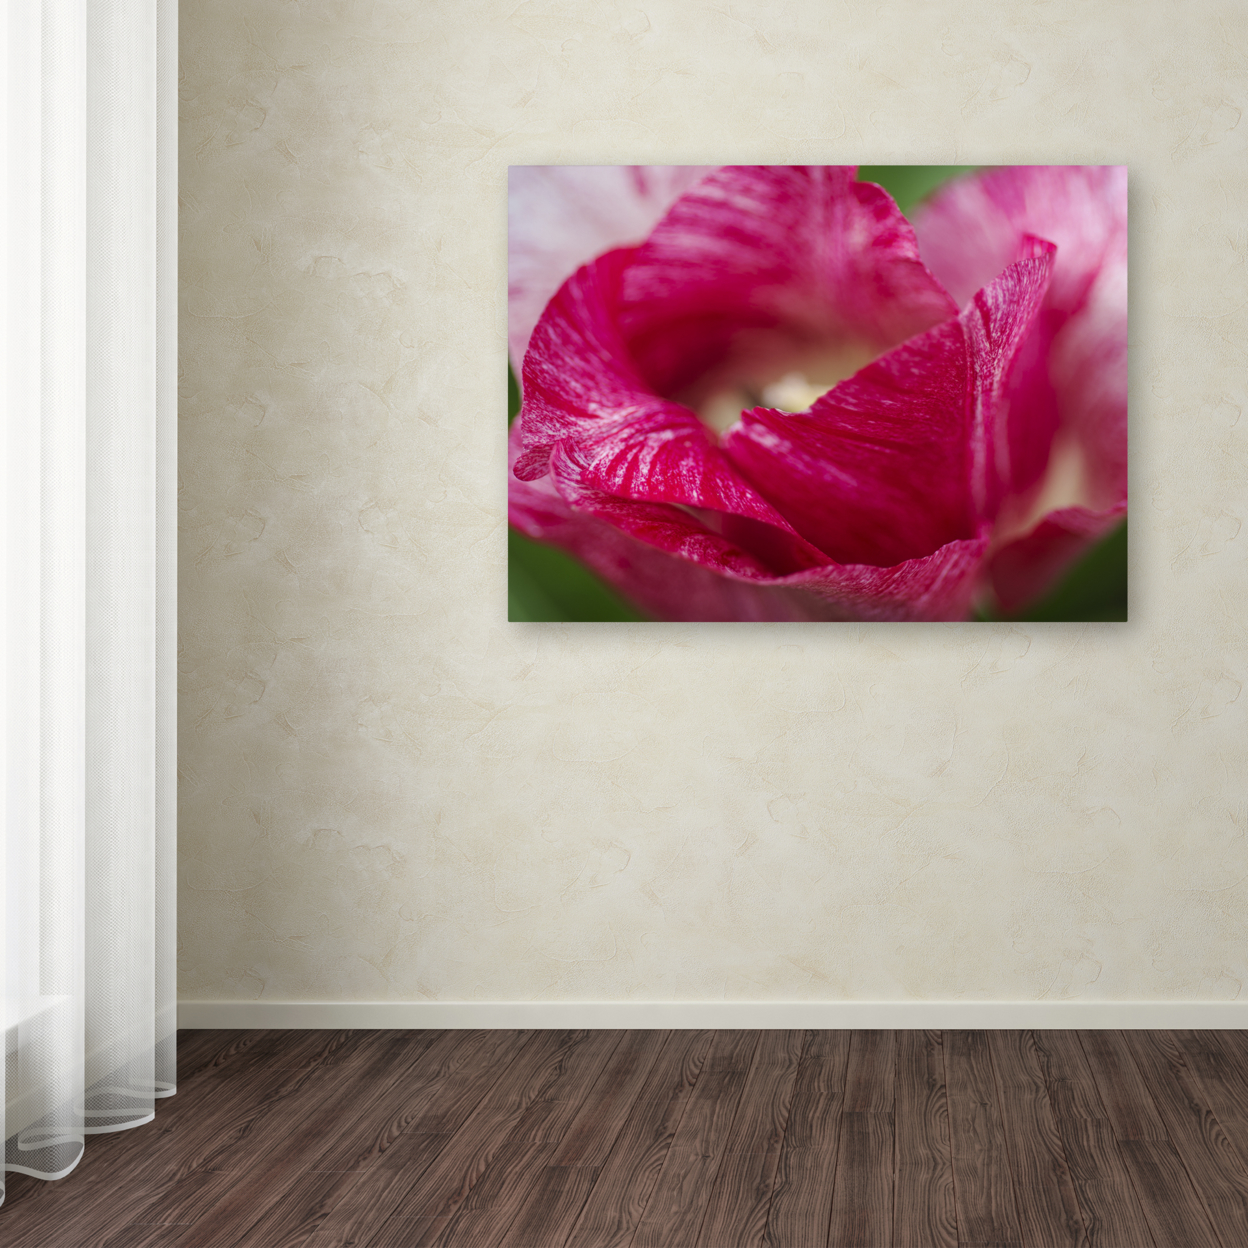 Kurt Shaffer 'Peppermint Tulip' Canvas Wall Art 35 X 47 Inches